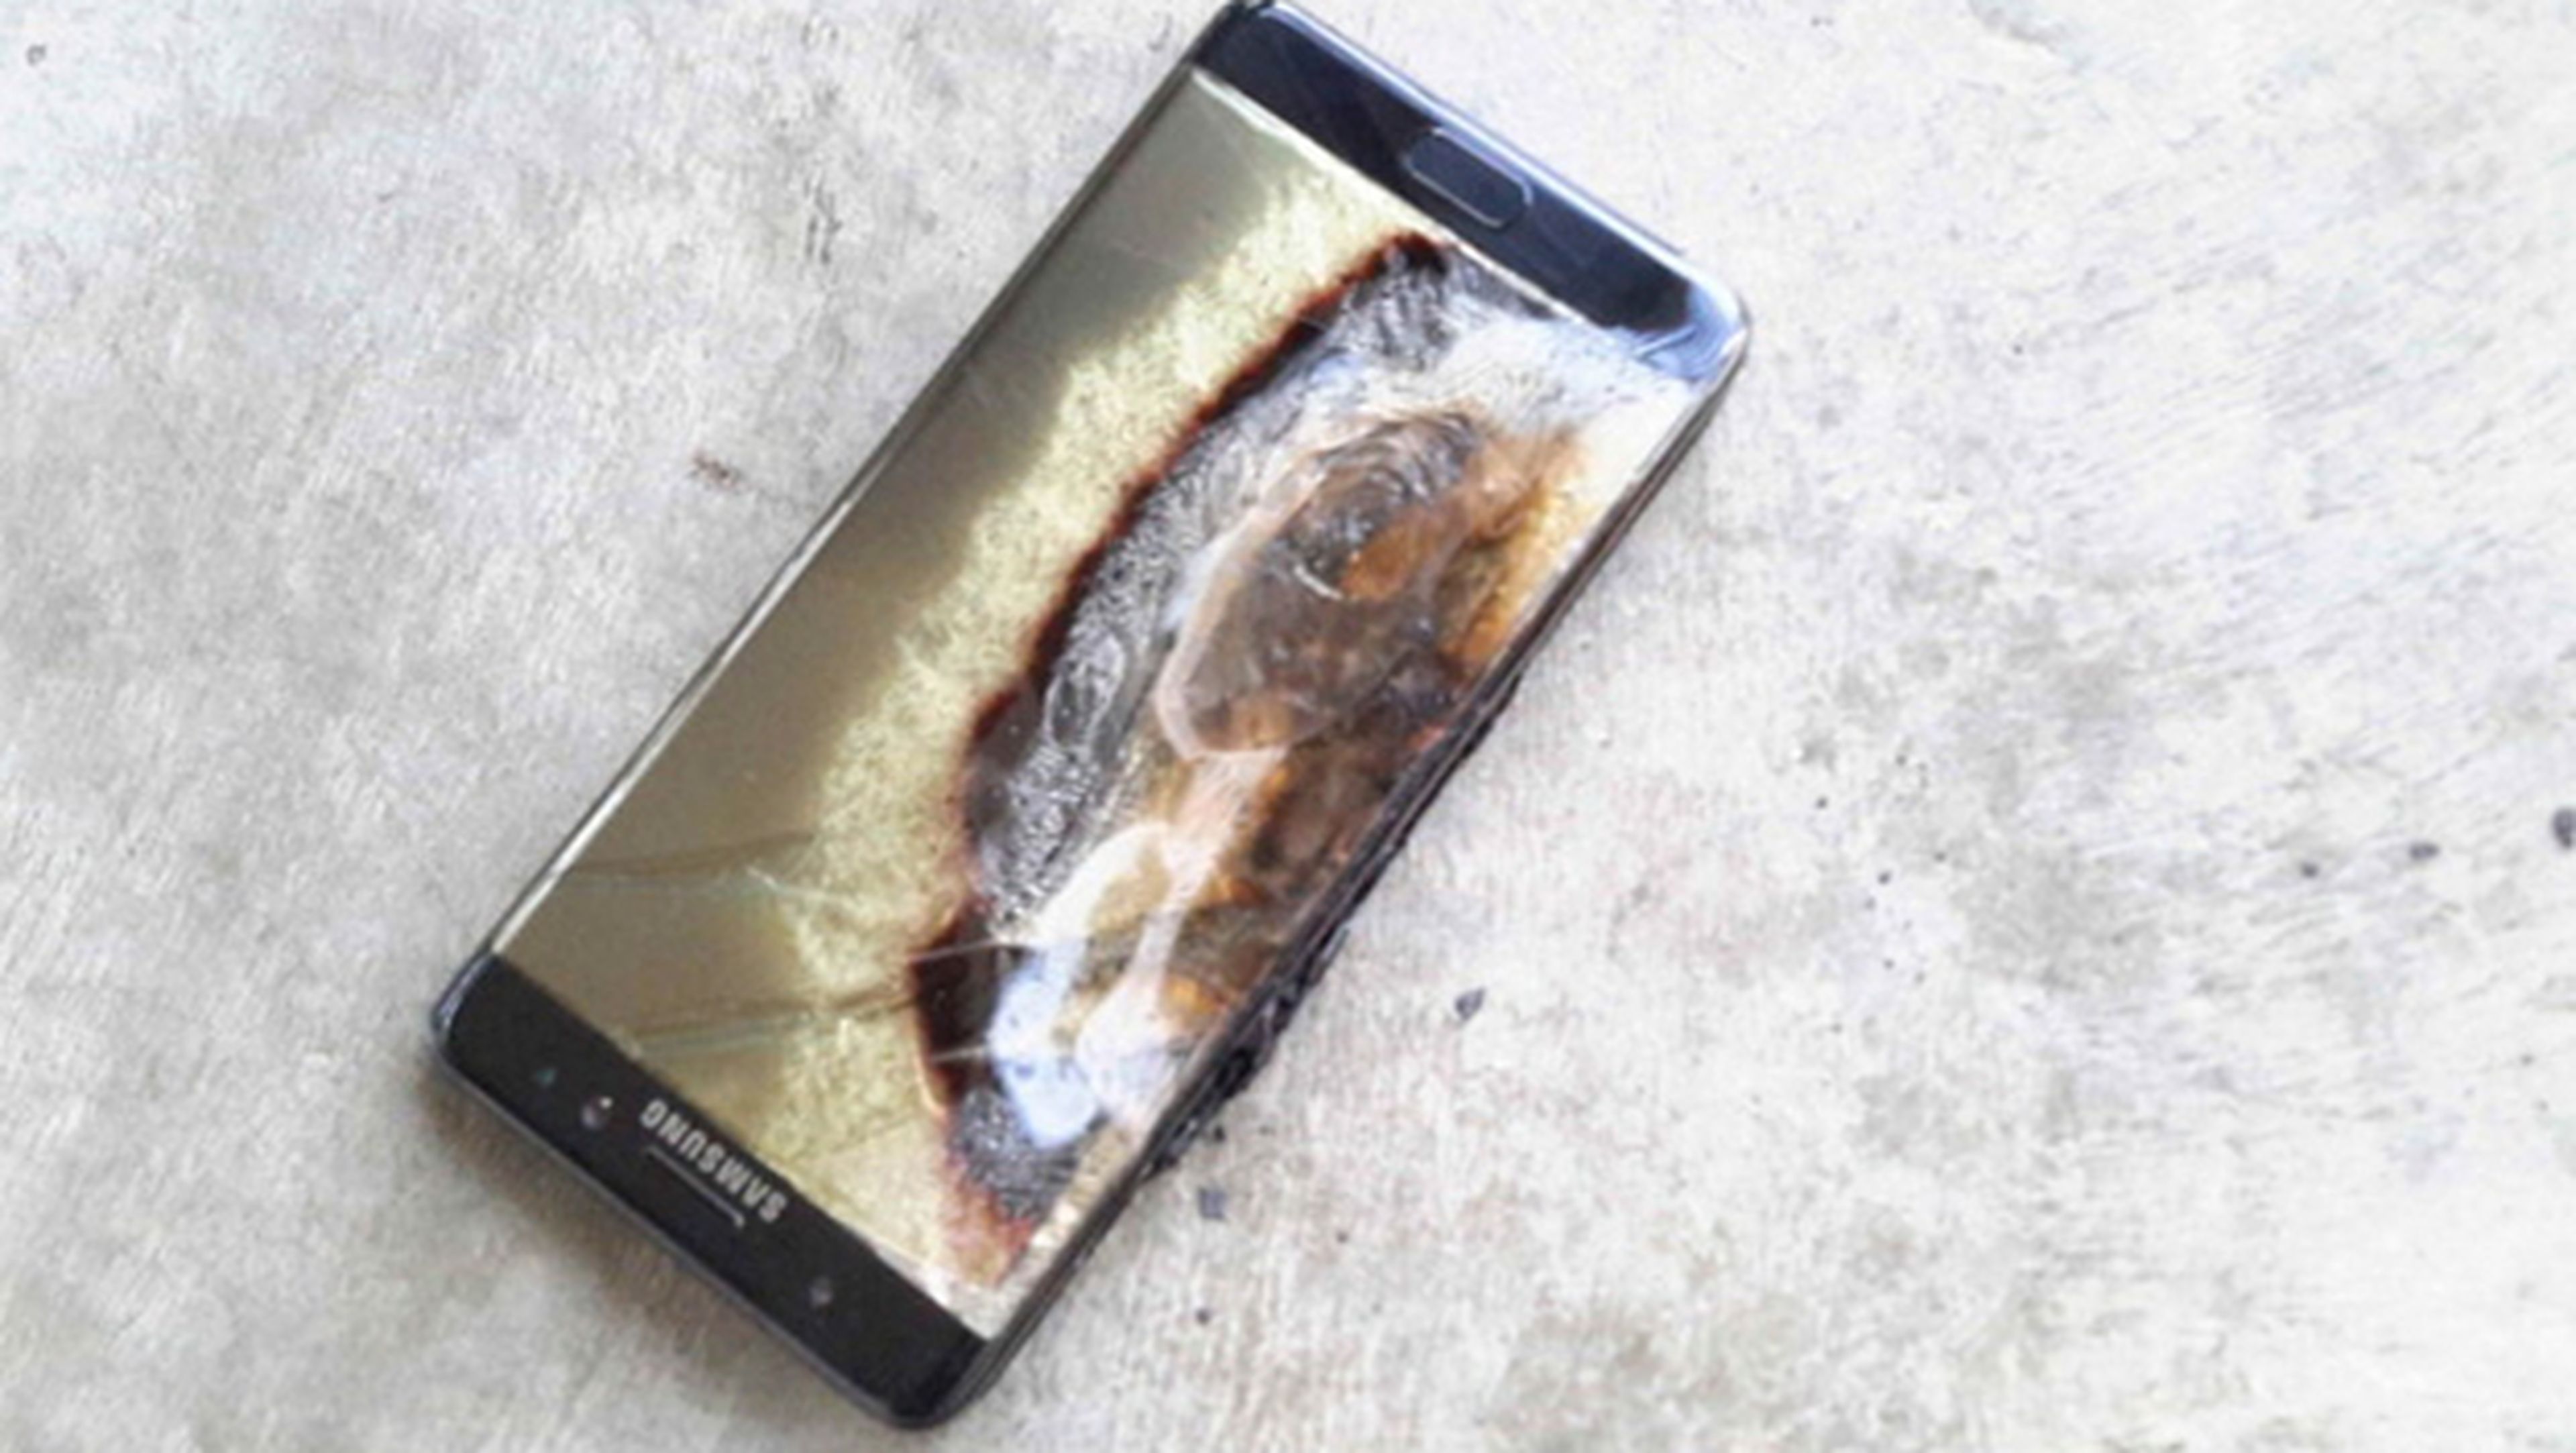 Galaxy Note 7 explosión